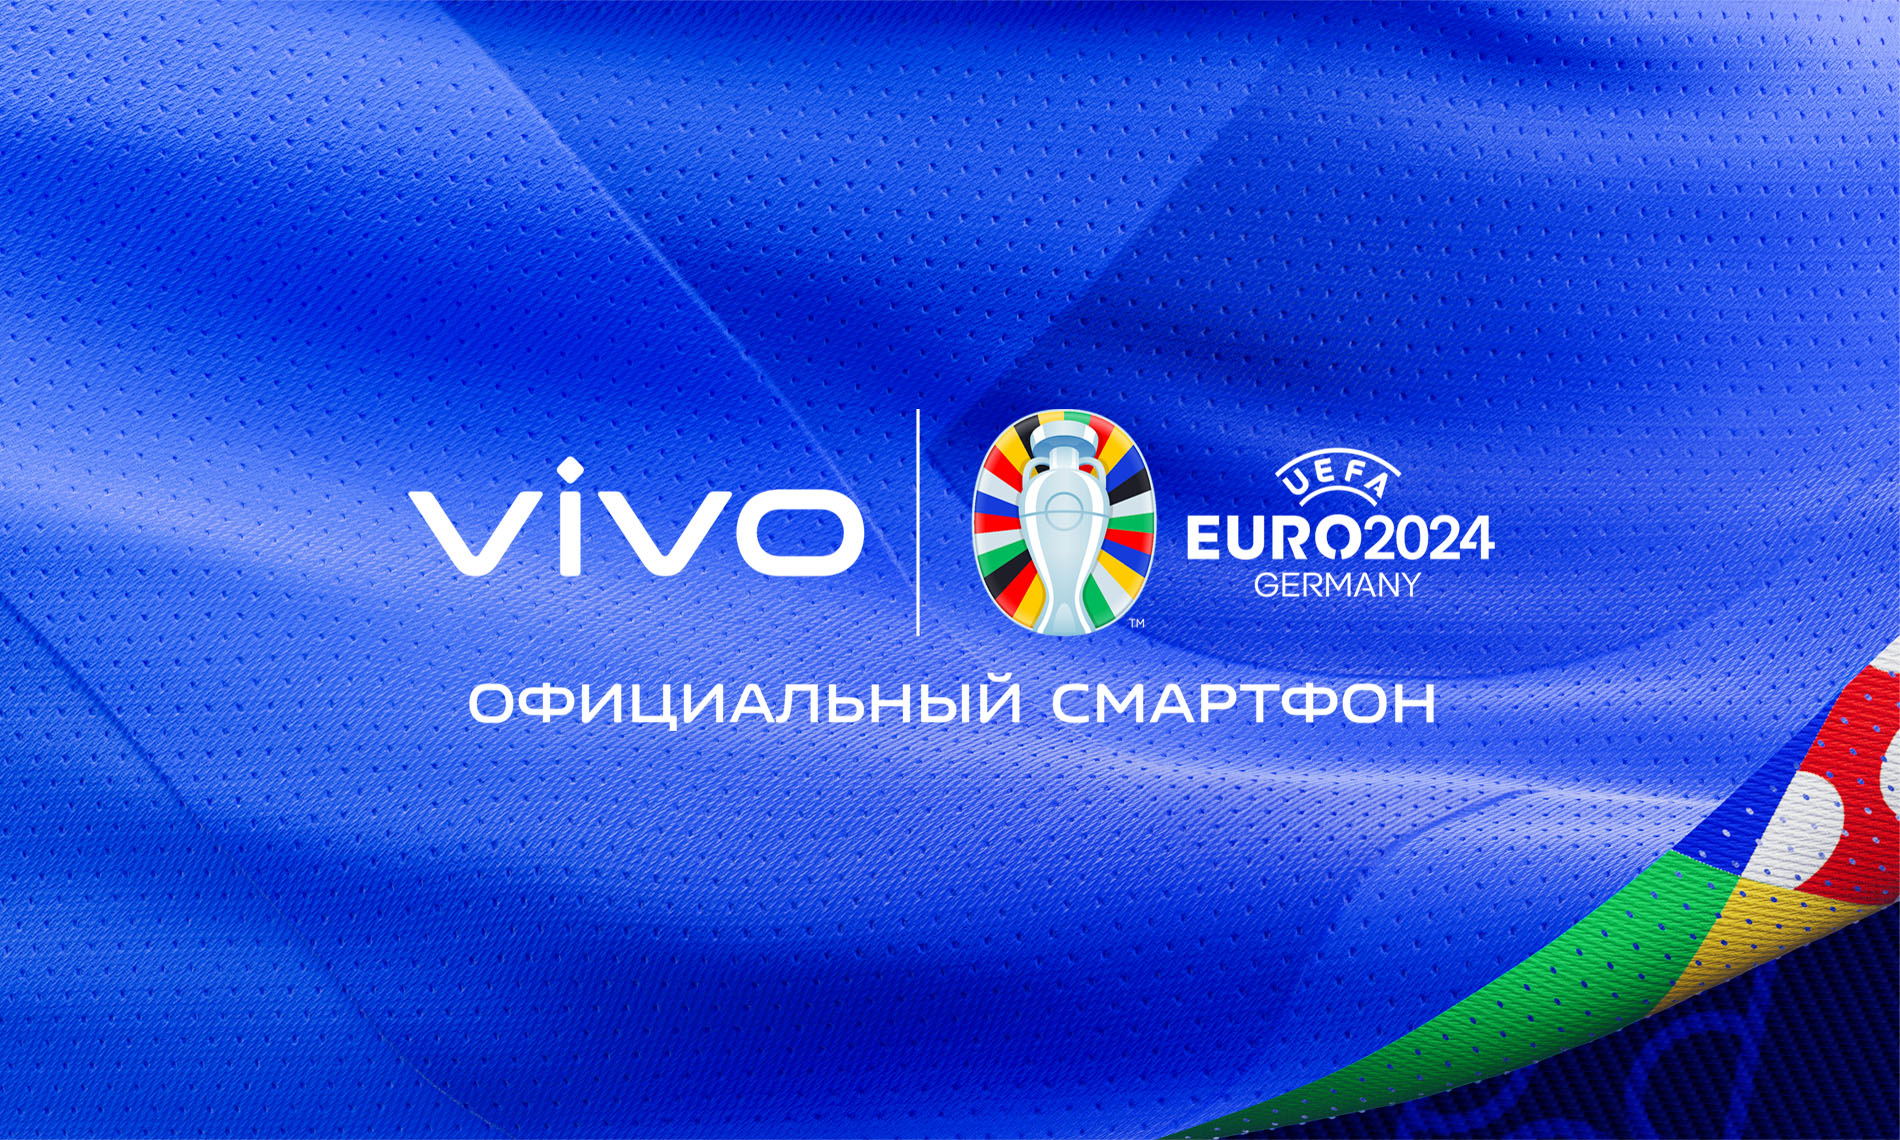 vivo отпразднует ЕВРО-2024 вместе с футбольными болельщиками по всему миру